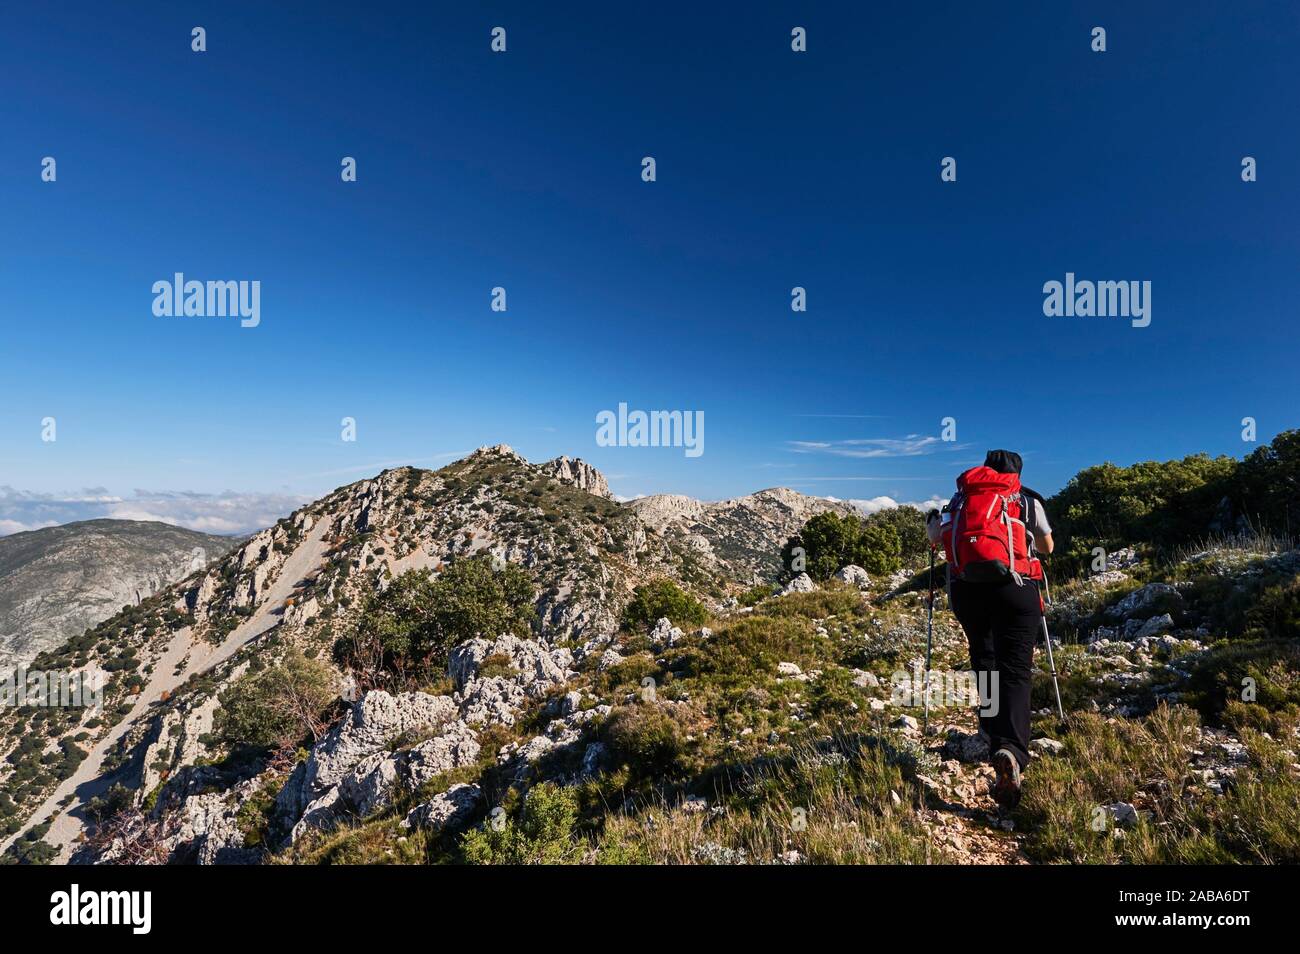 Woman with red backpack hiking near Pla de la Casa peak in Serrella mountain range, Confrides (province of Alicante, Valencian Community) Stock Photo